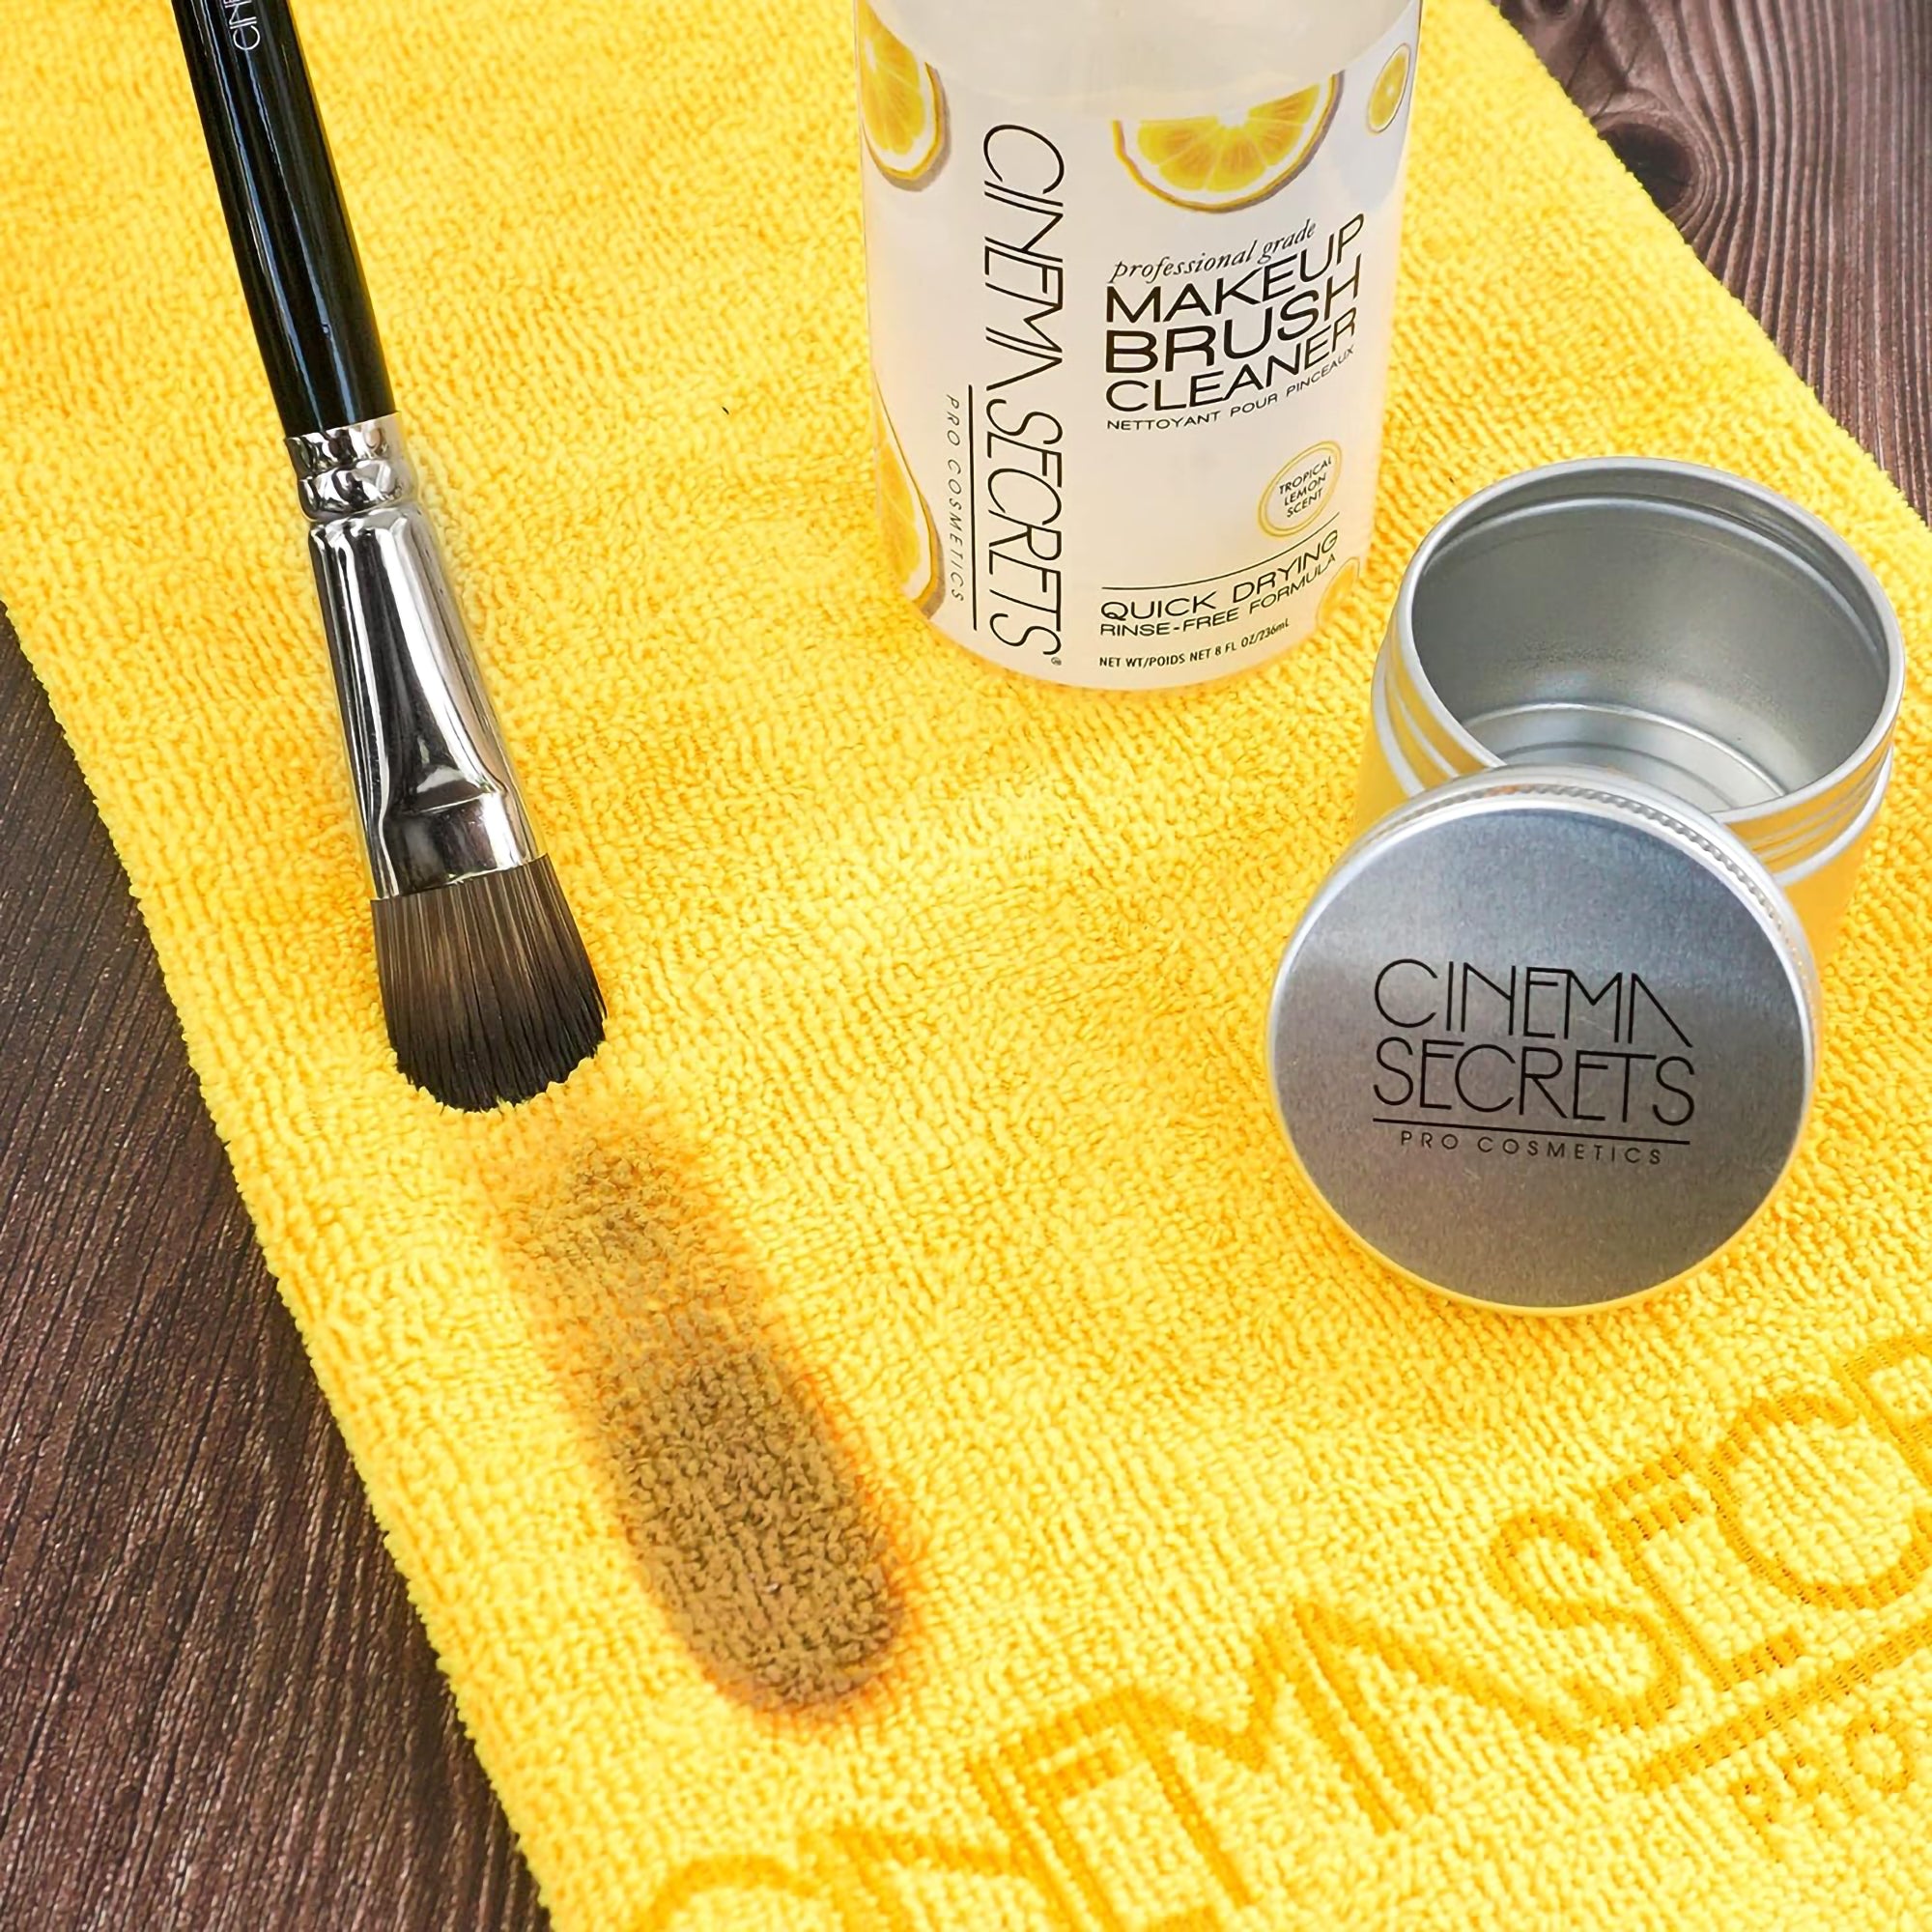 Cinema Secrets Makeup Brush Cleaner - Lemon Scented / 16OZ